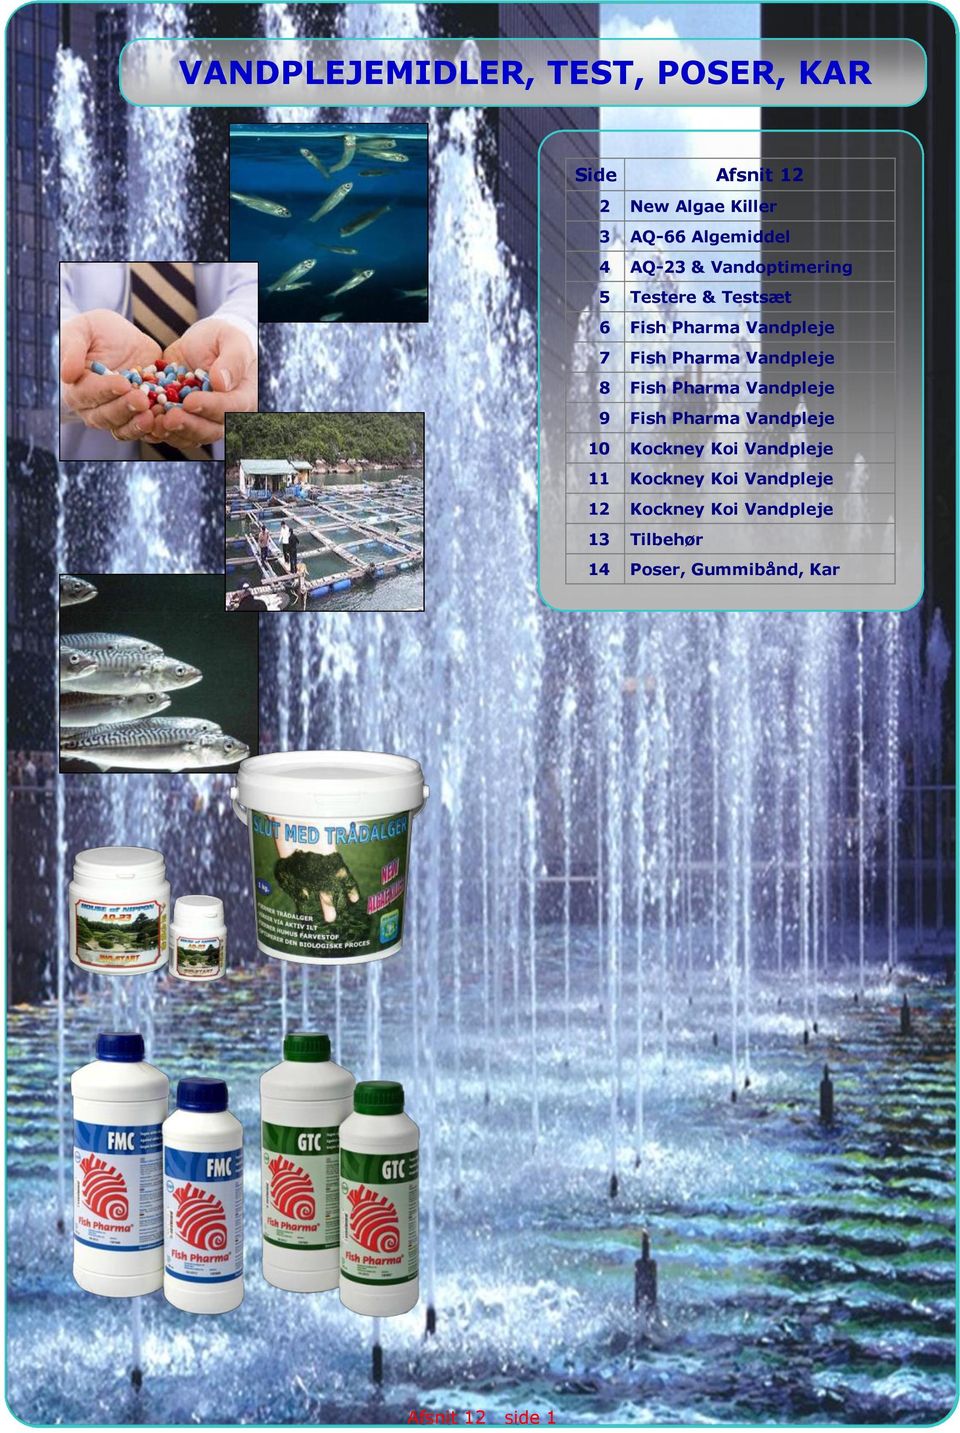 Vandpleje 8 Fish Pharma Vandpleje 9 Fish Pharma Vandpleje 10 Kockney Koi Vandpleje 11